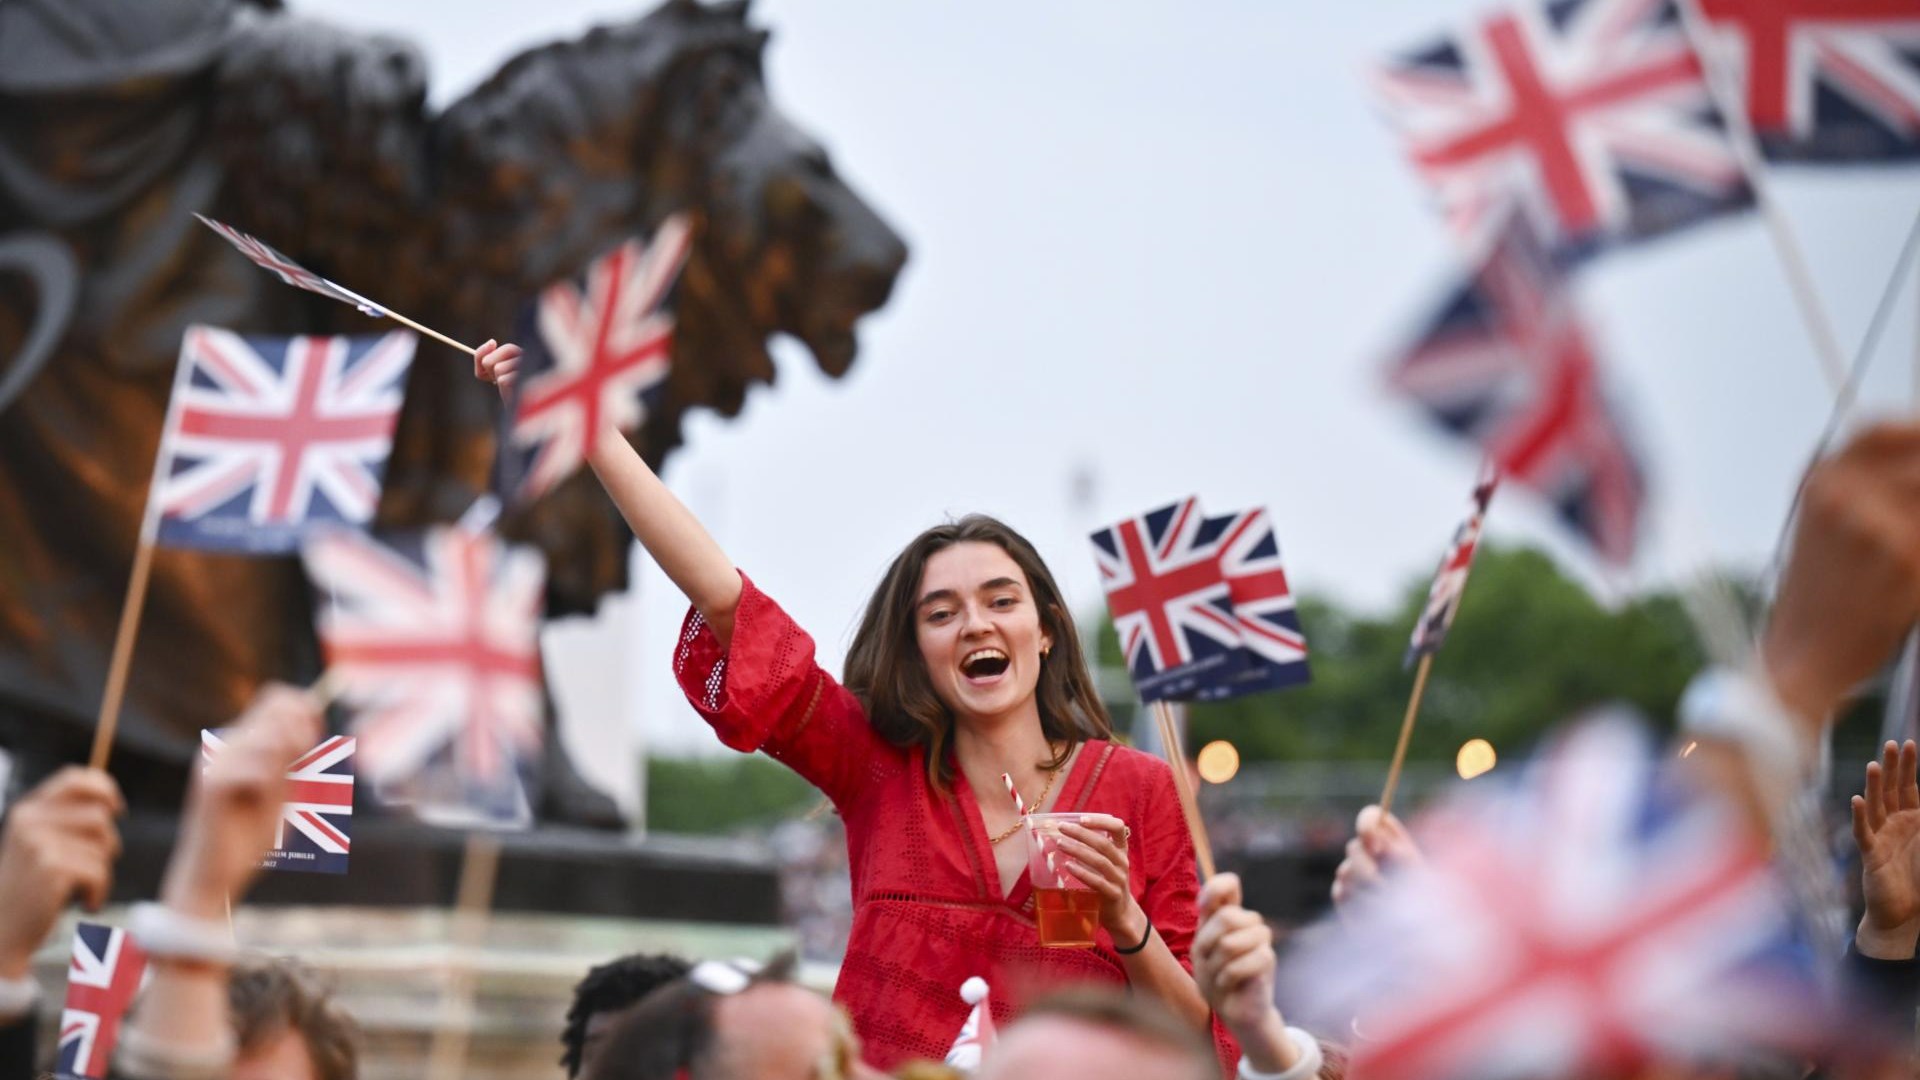 #foto Jubiläum von Queen Elizabeth II.  mit einer Party vor dem Buckingham Palace gefeiert